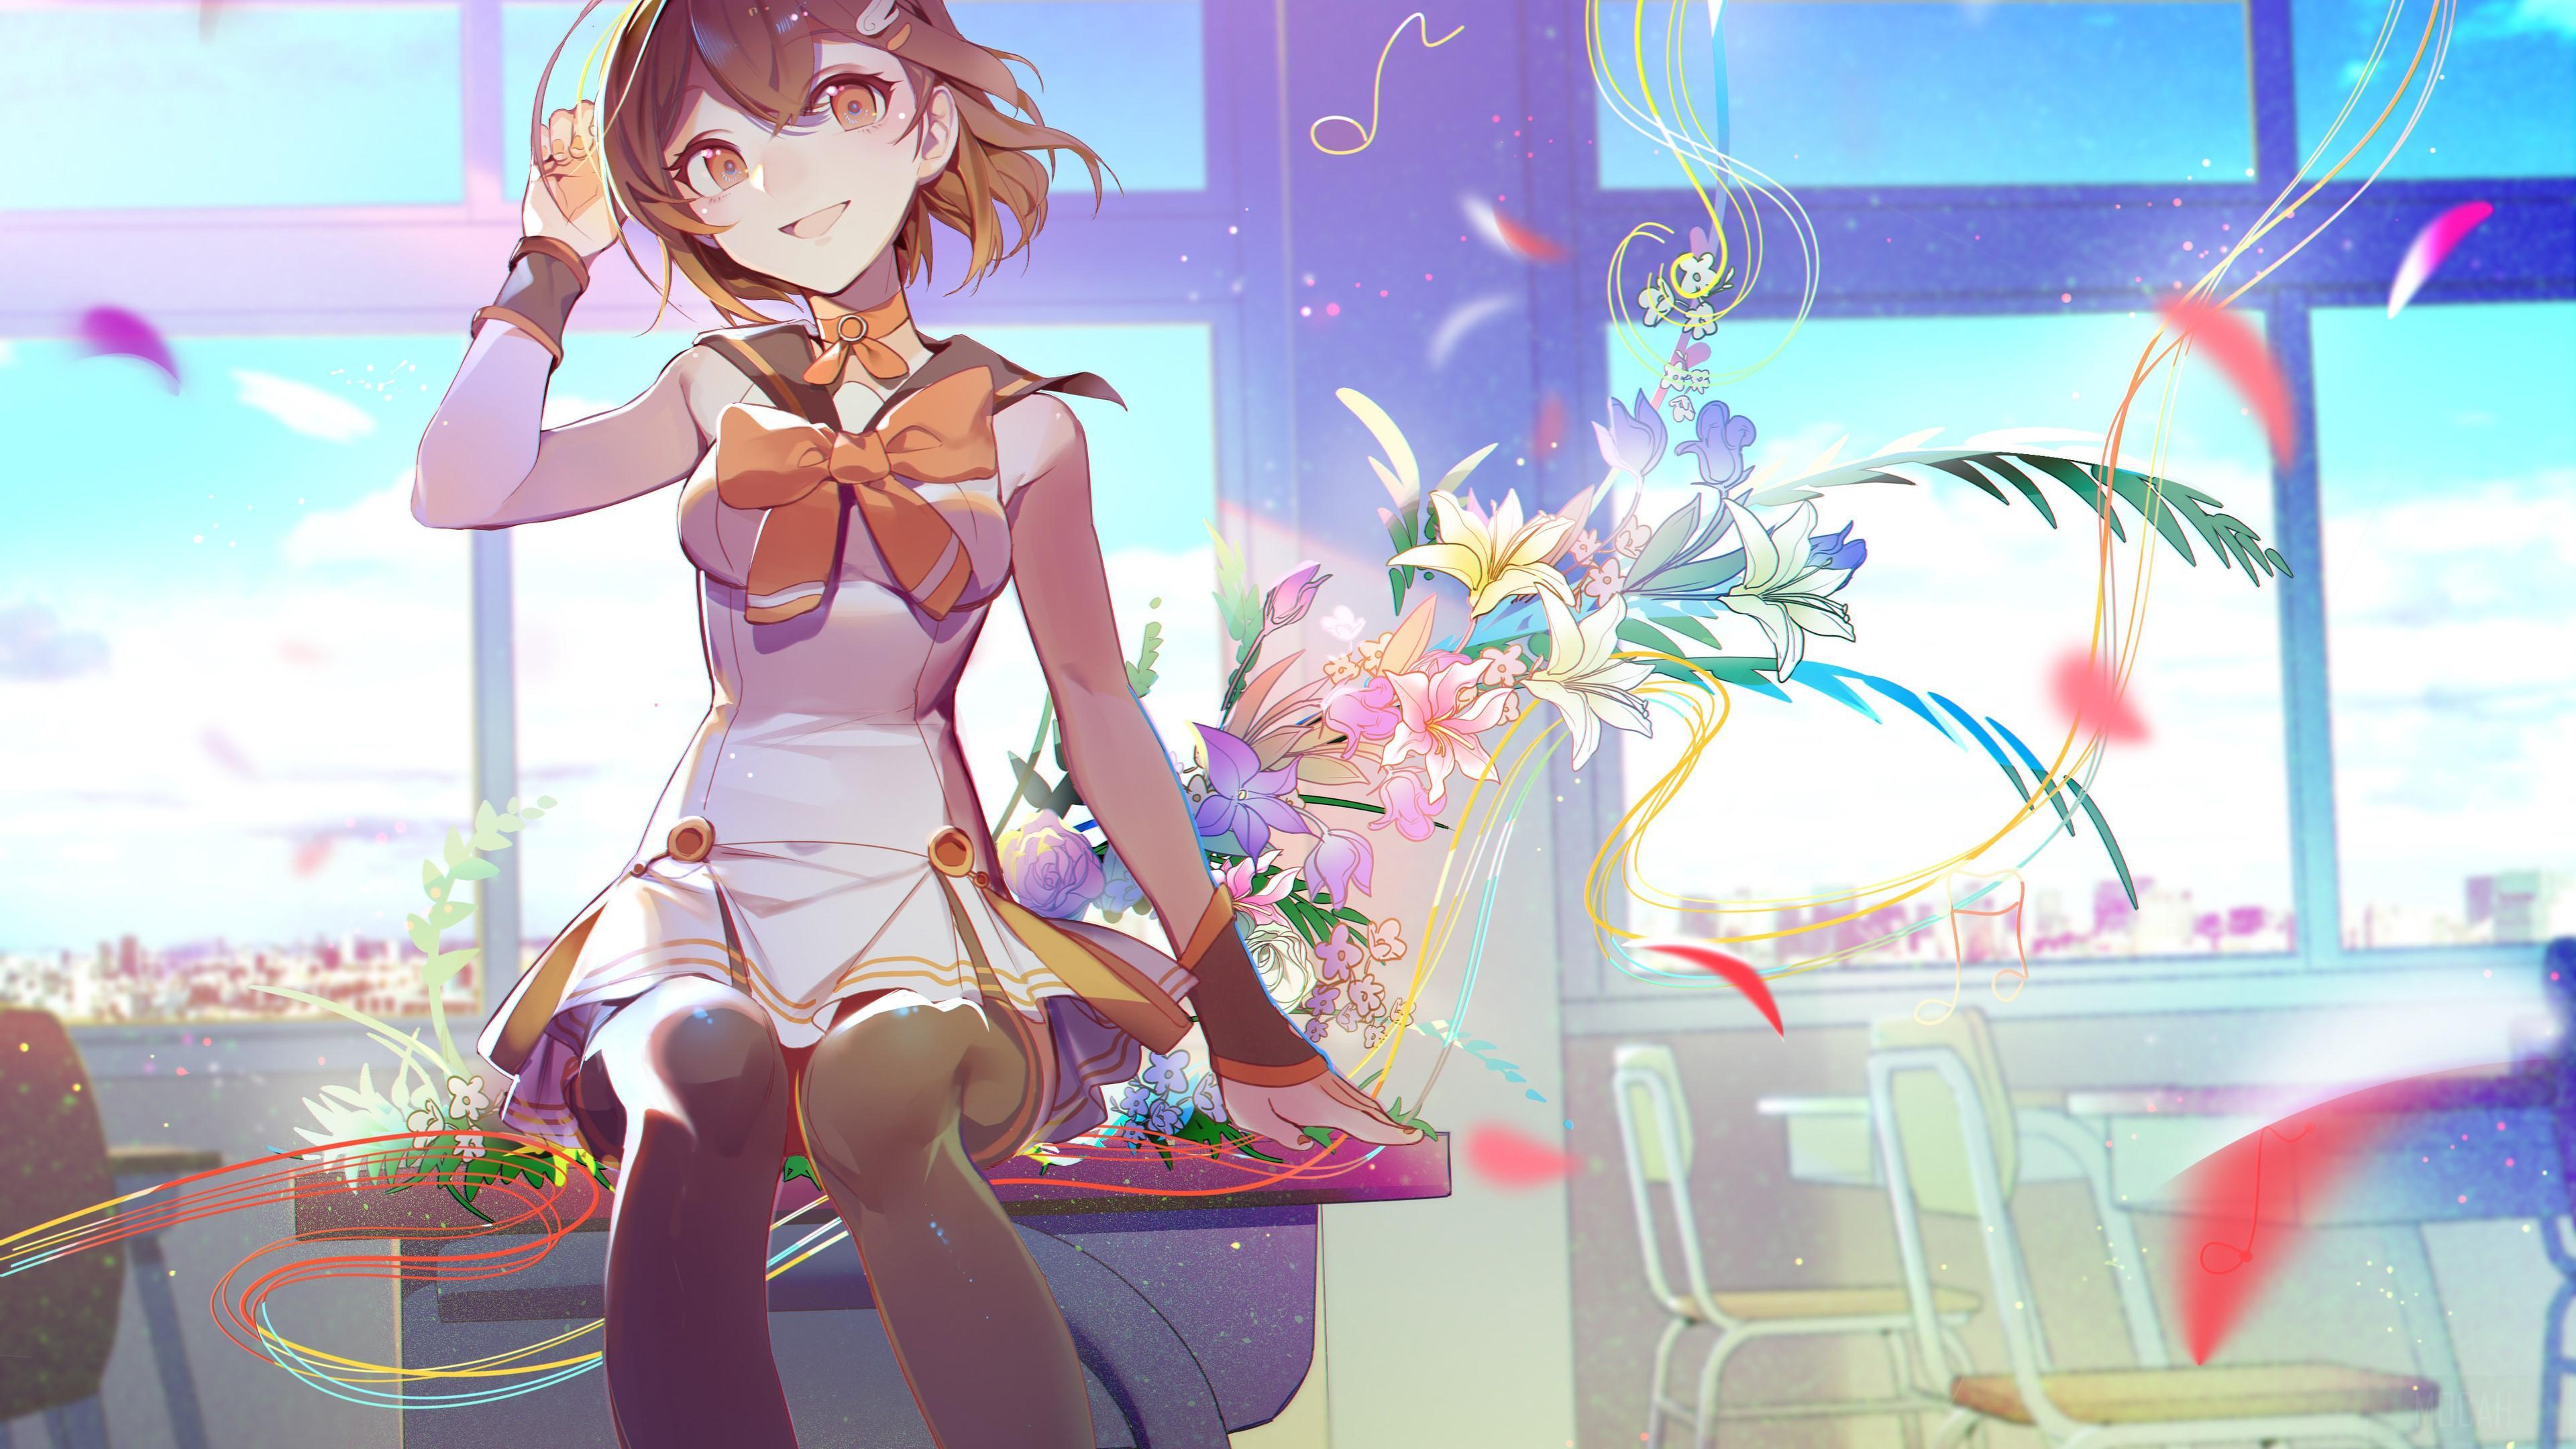 HD wallpaper, 4K Anime Girl In School Uniform 4K